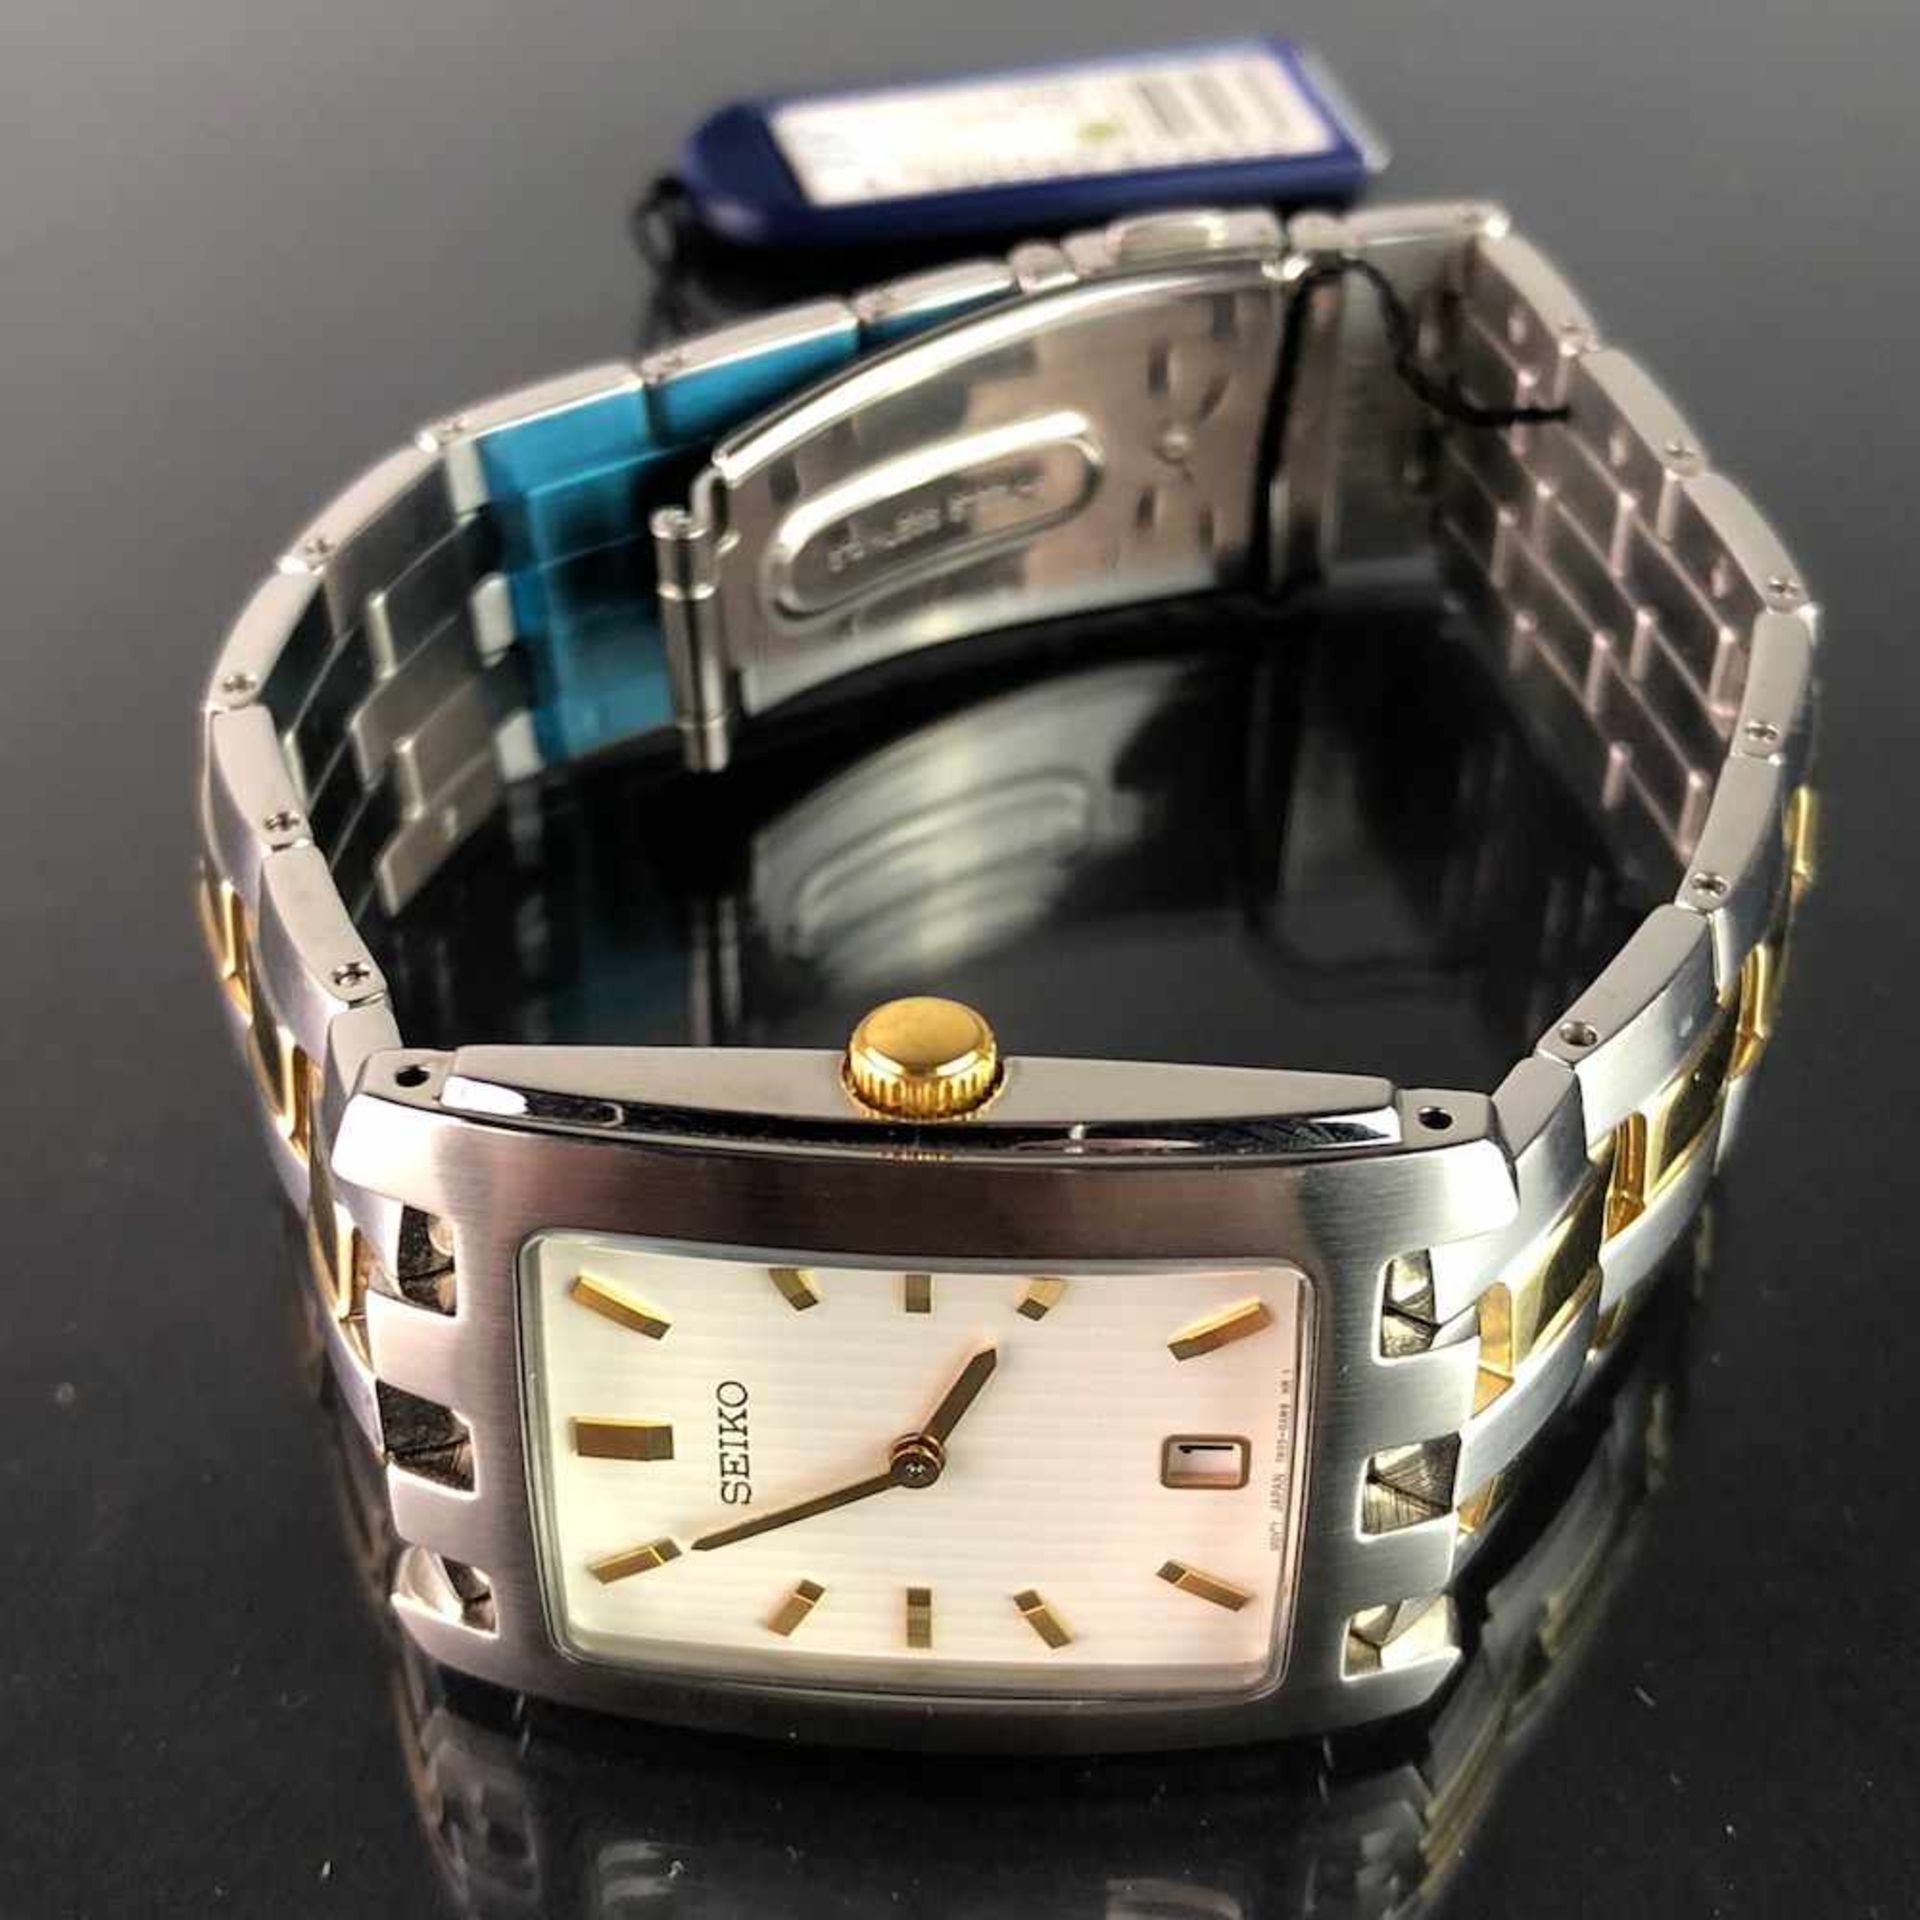 Armbanduhr: "SEIKO". Edelstahl matiert und bicolor. Mineralglas. Ungetragen aus Uhrmachernachlaß. - Bild 2 aus 4